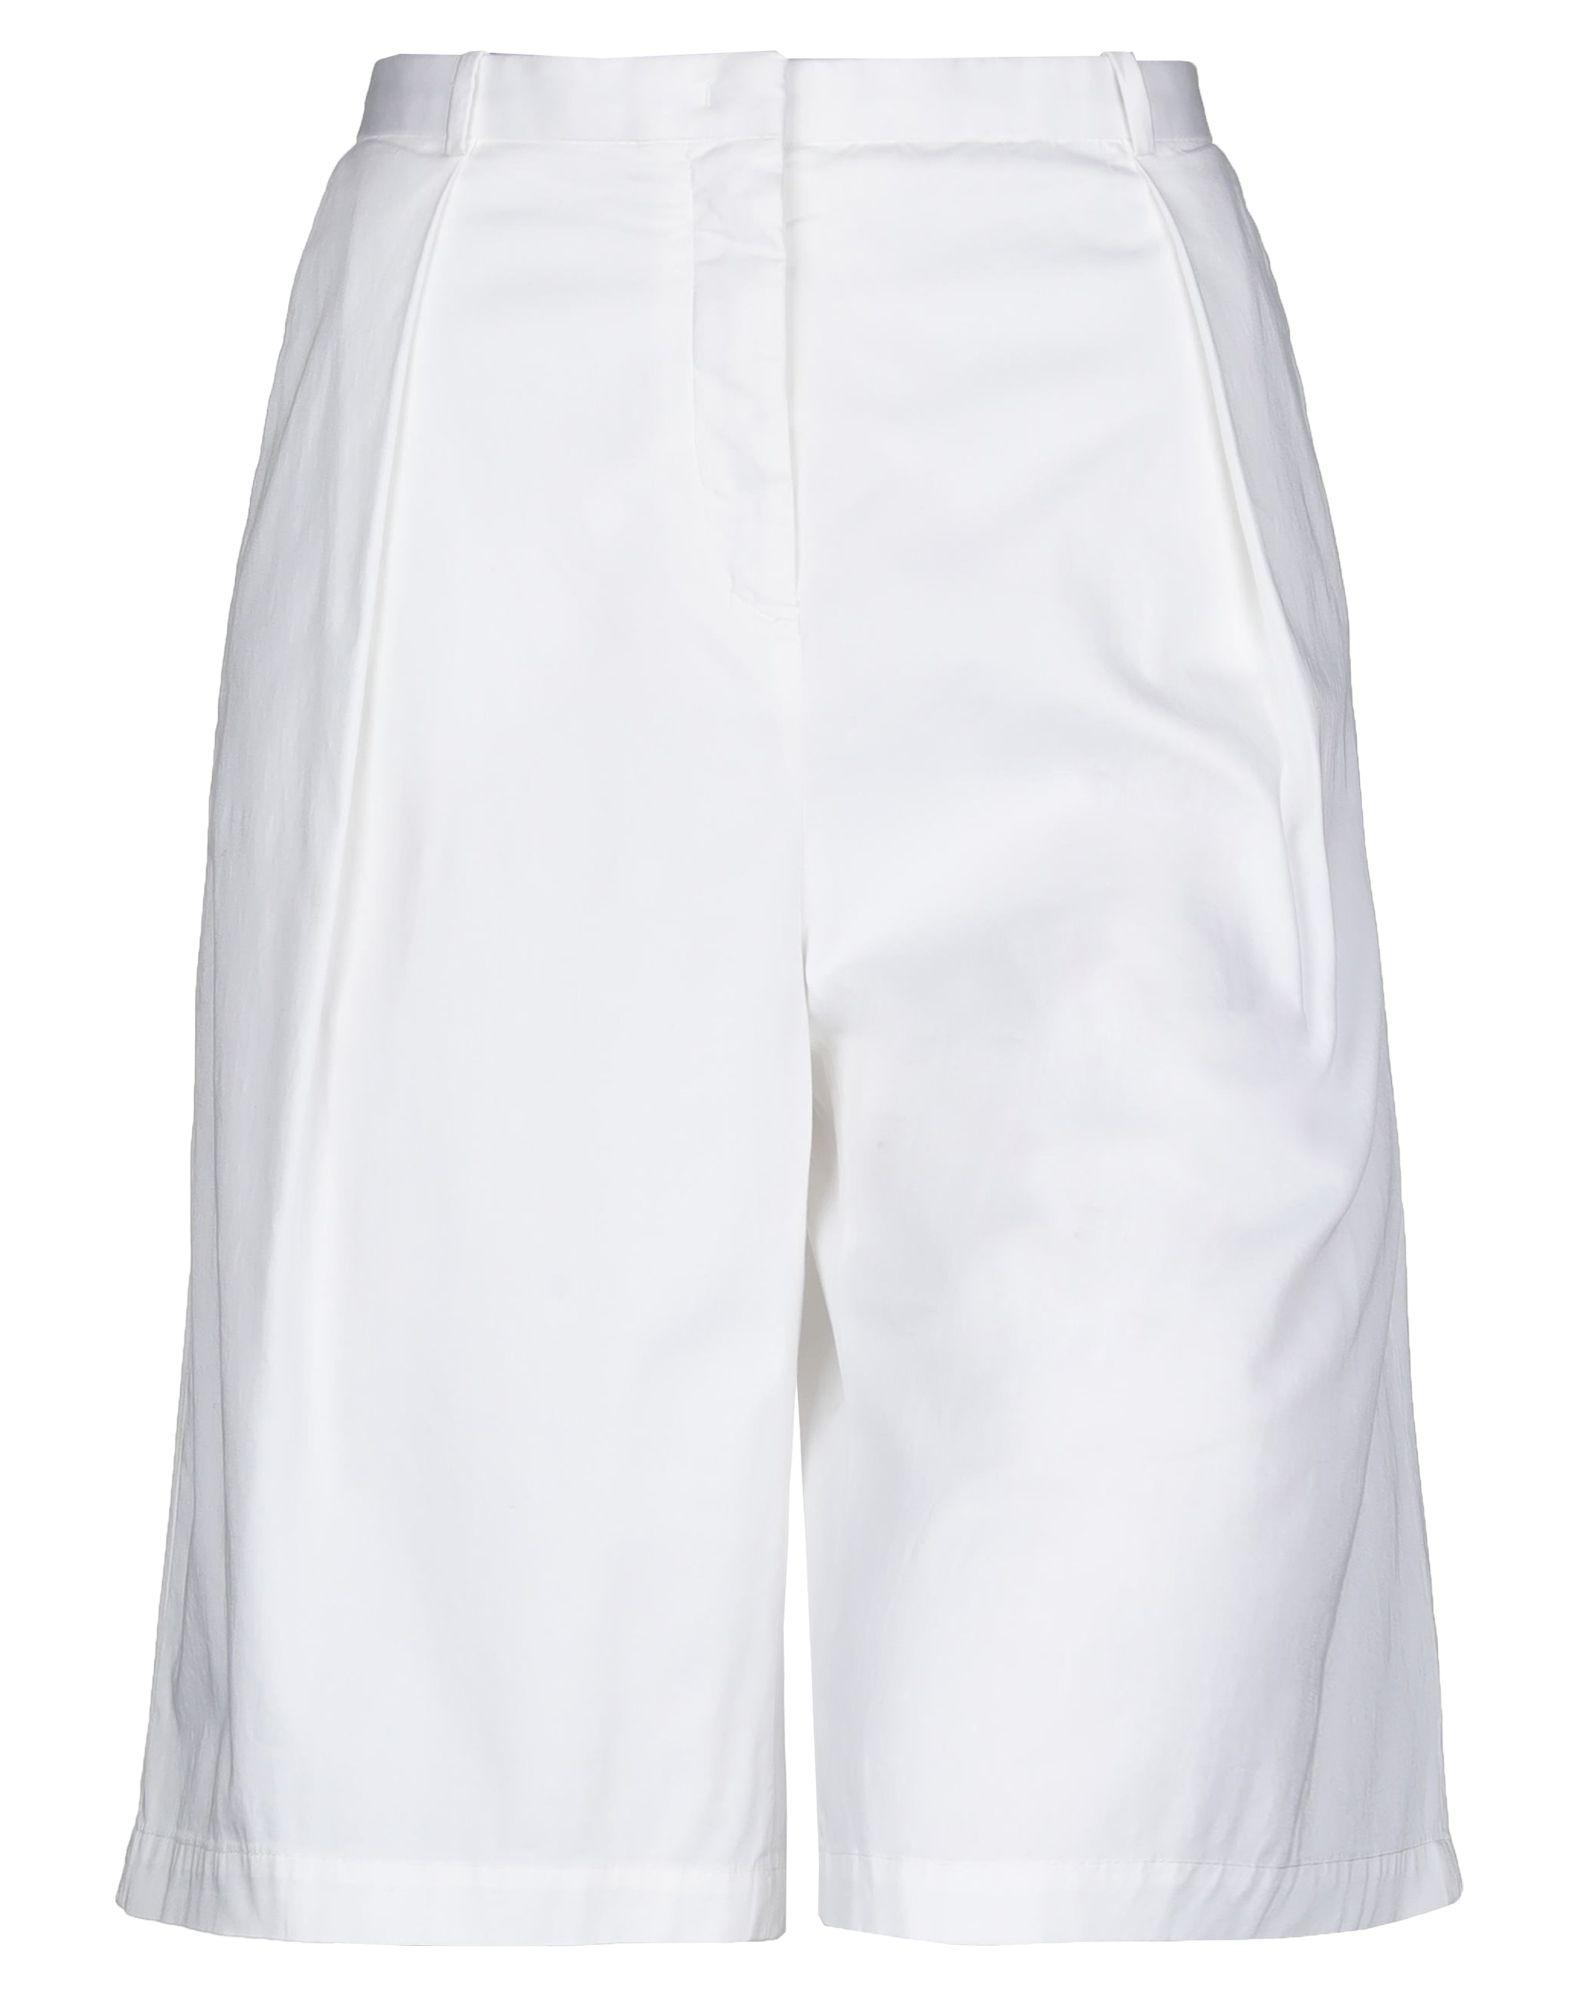 Fabiana Filippi Bermuda Shorts in White - Lyst